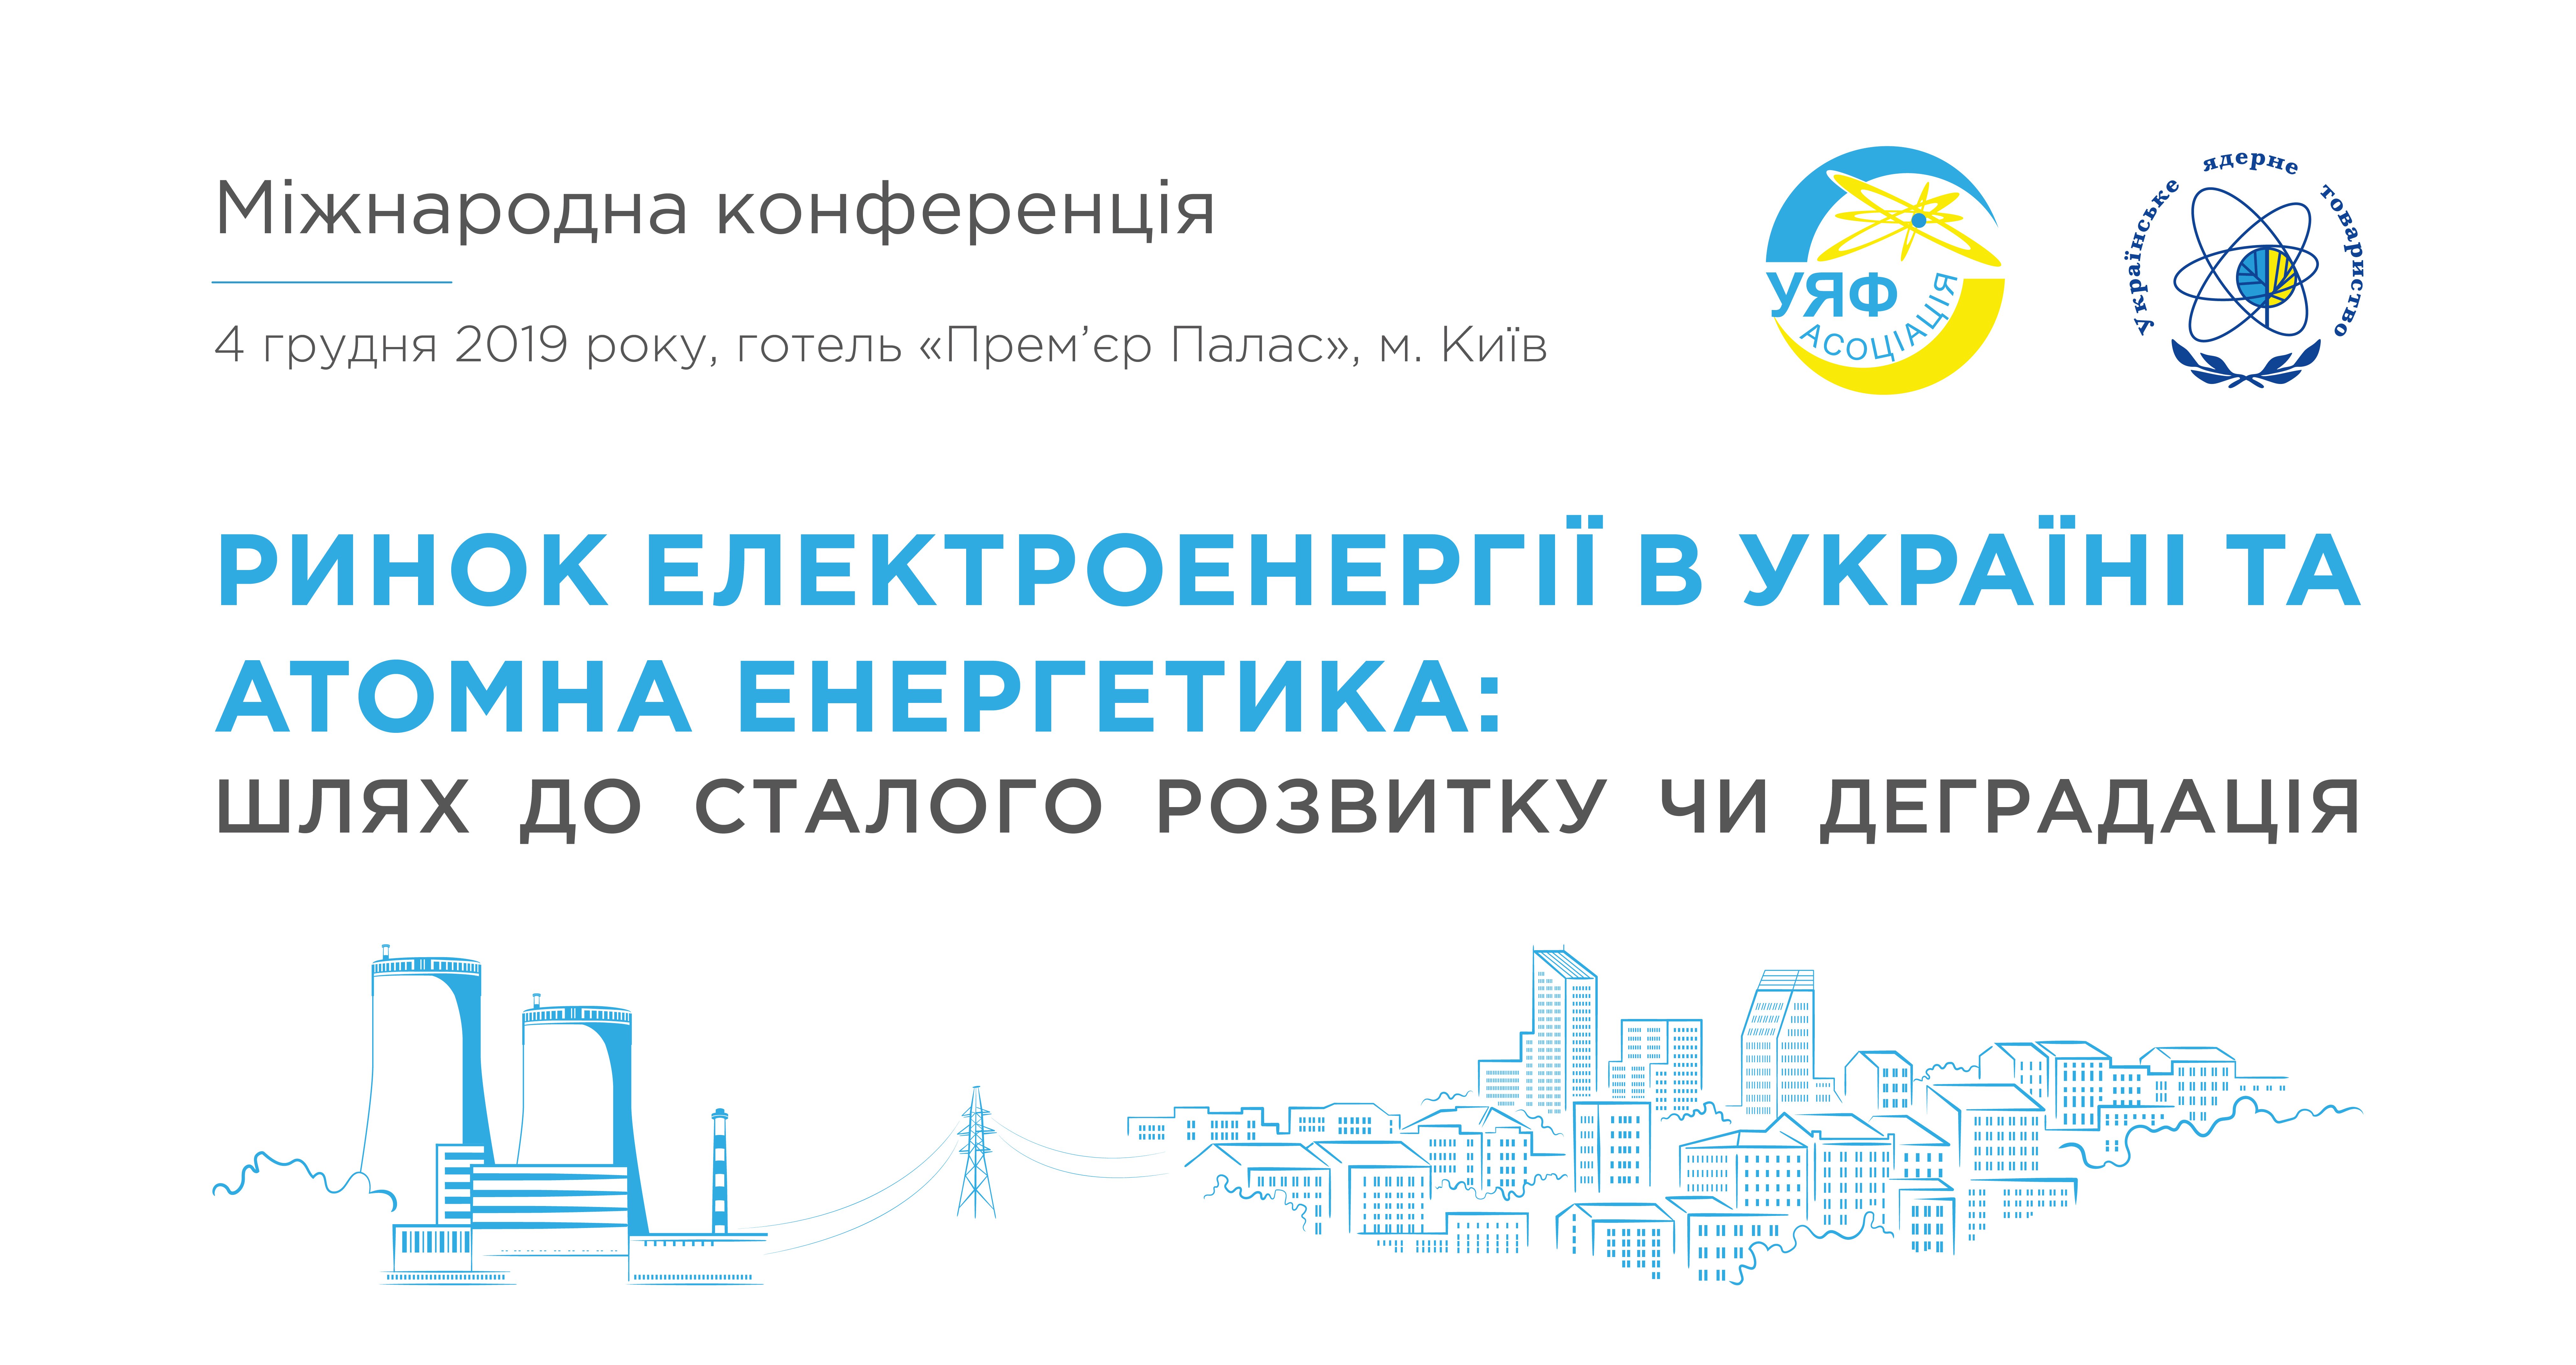 Міжнародна конференція «Ринок електроенергії в Україні та атомна енергетика: шлях до сталого розвитку чи деградація»